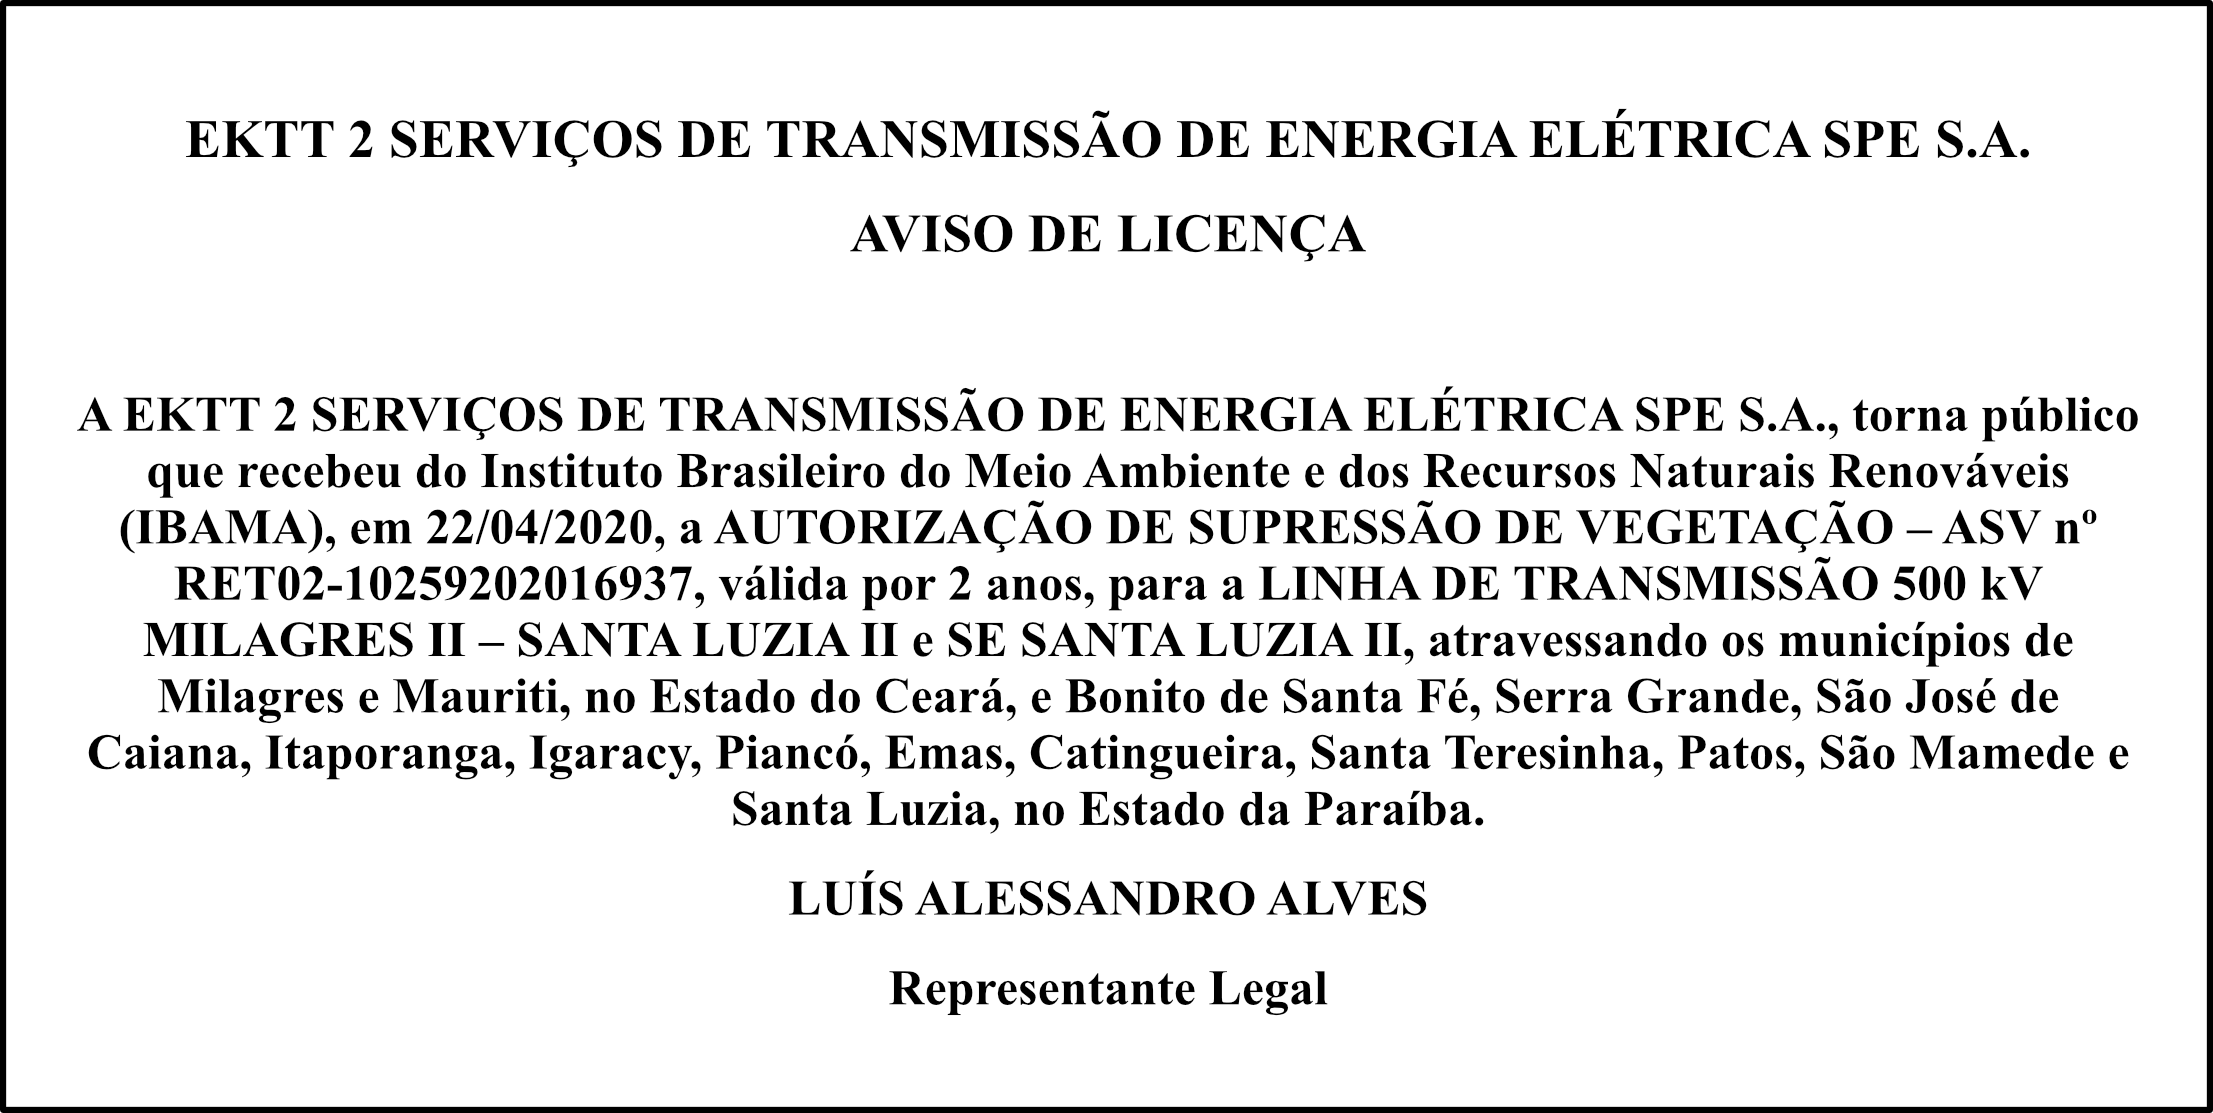 EKTT 2 SERVIÇOS DE TRANSMISSÃO DE ENERGIA ELÉTRICA SPE S.A – AVISO DE LICENÇA